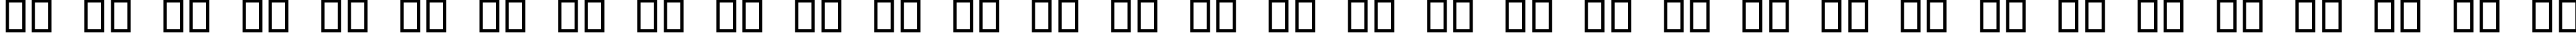 Пример написания русского алфавита шрифтом Digital dream Skew Narrow